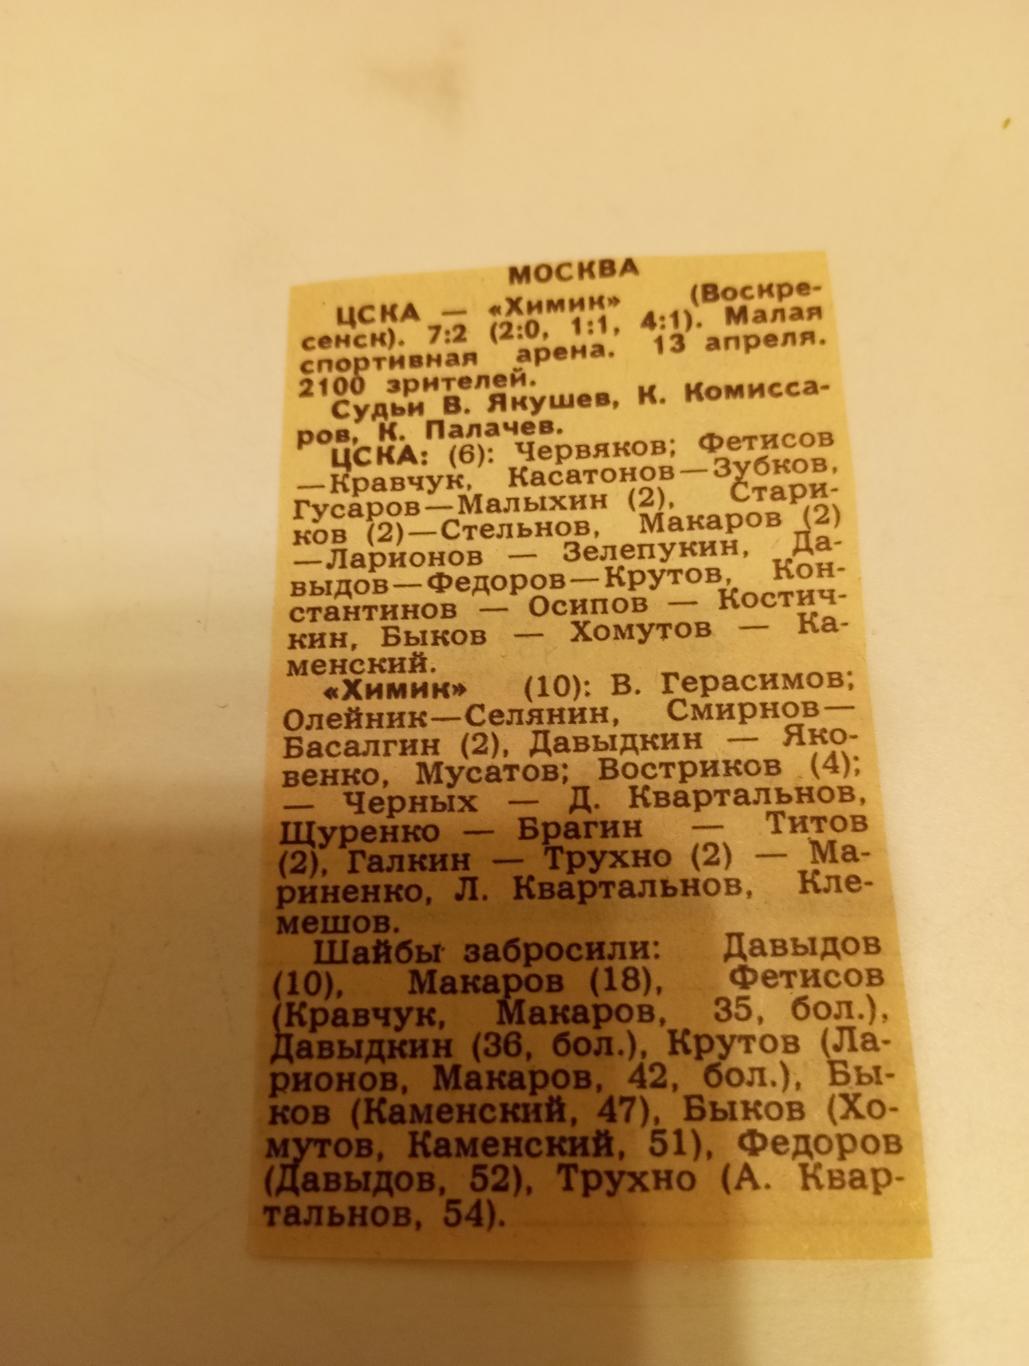 Цска - Химик (Воскресенск). 13.04.1987. Счёт (7-2)